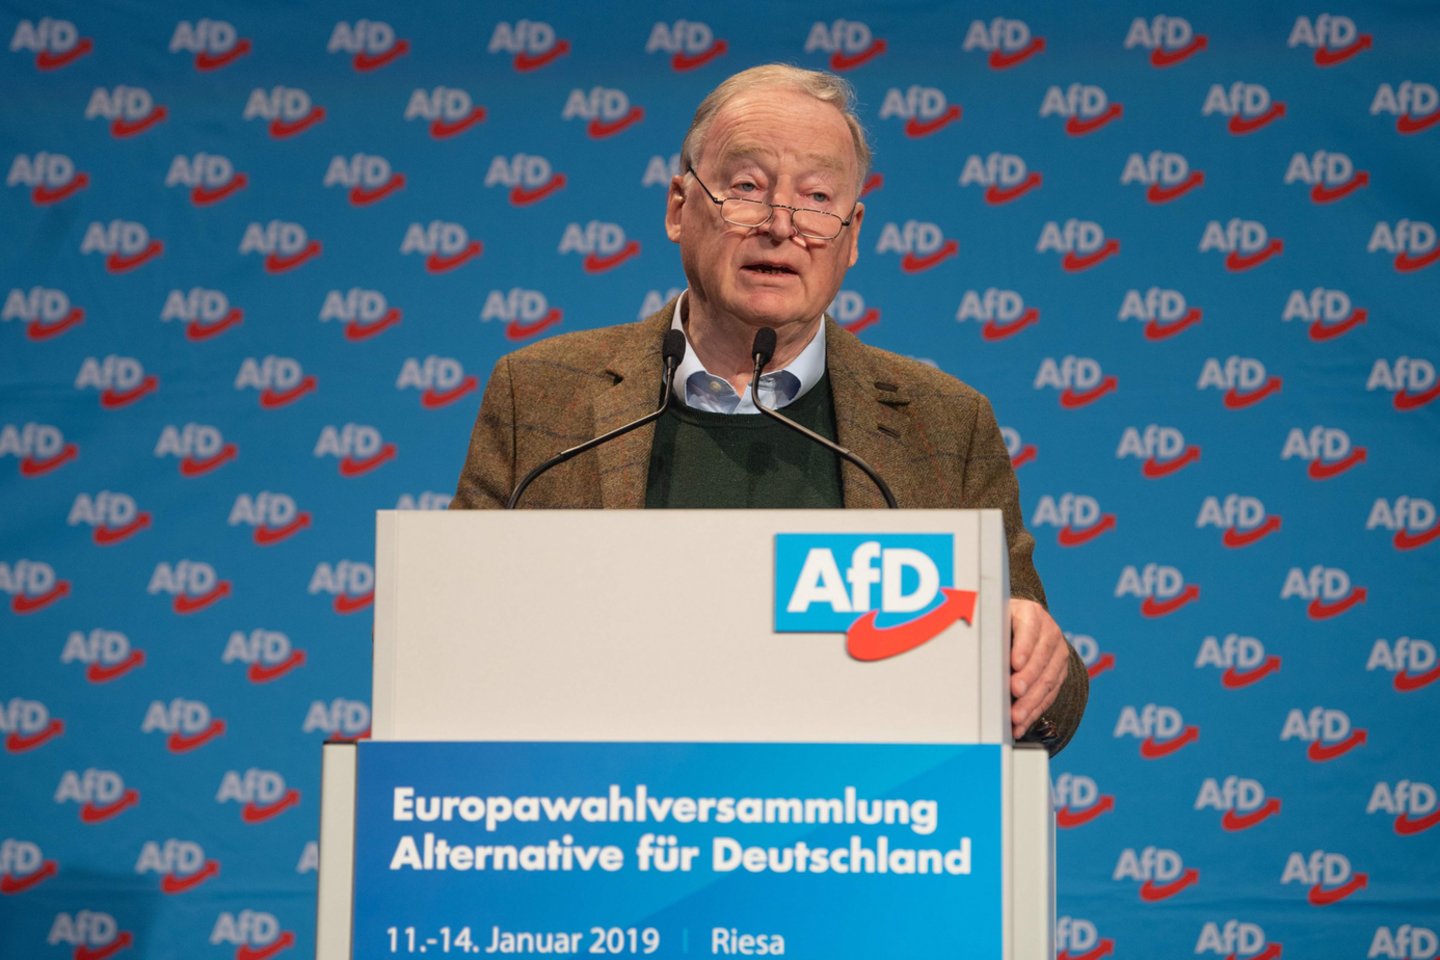  Tai pirmas kartas, kai kuri nors partija paragino siekti „Dexit“ – Vokietijos išstojimo iš ES.<br> AFP/Scanpix nuotr.